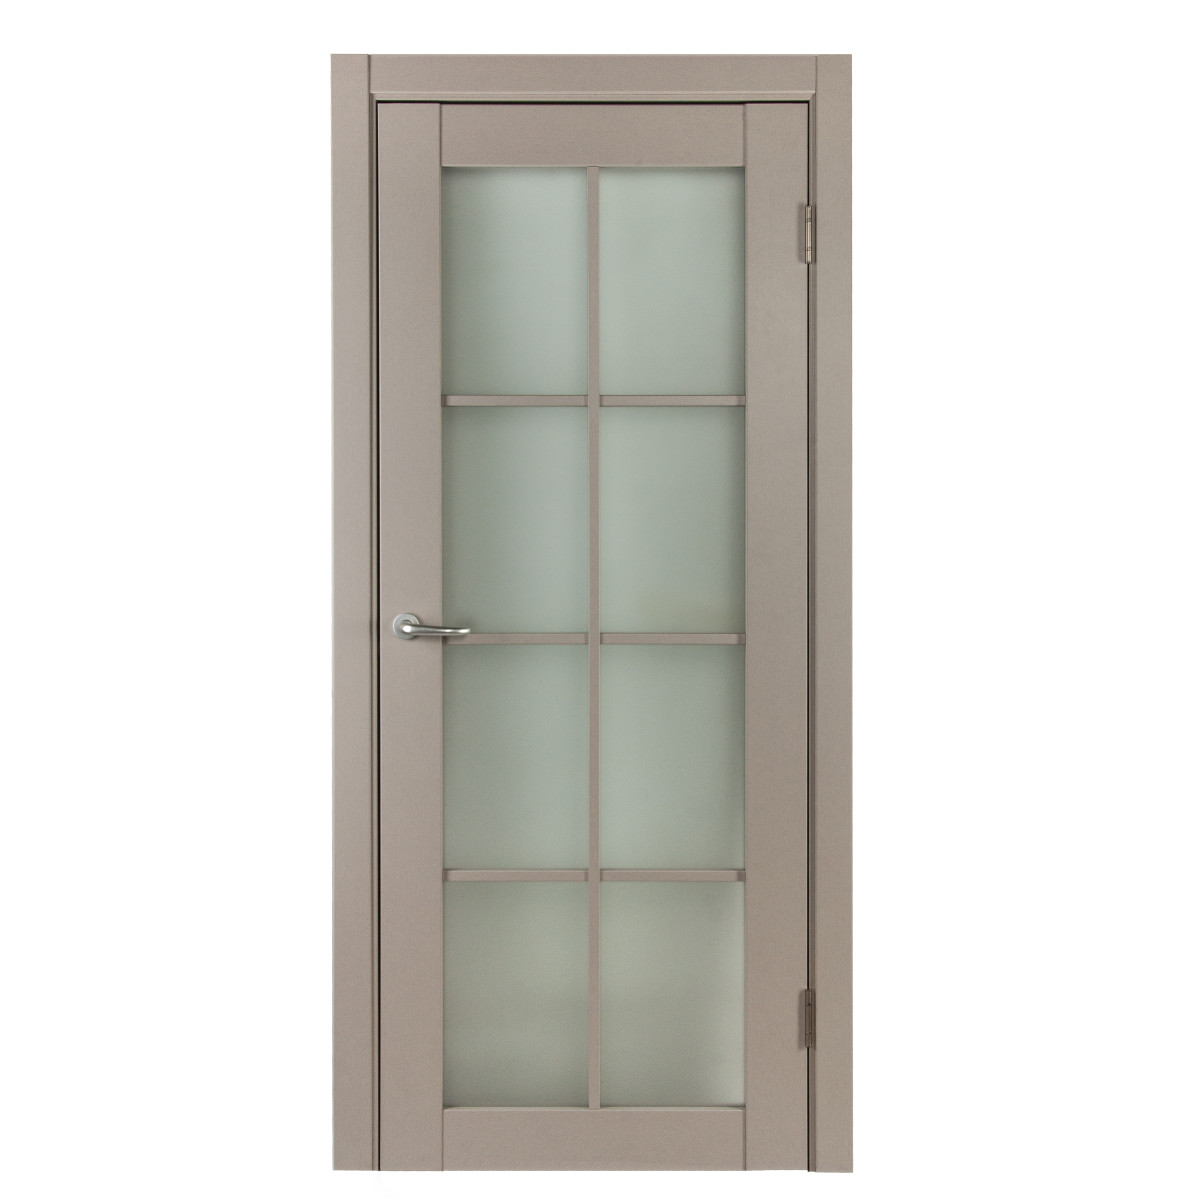 Дверь межкомнатная остеклённая с фурнитурой Пьемонт 70х200 см, Hardflex, цвет платина светлая